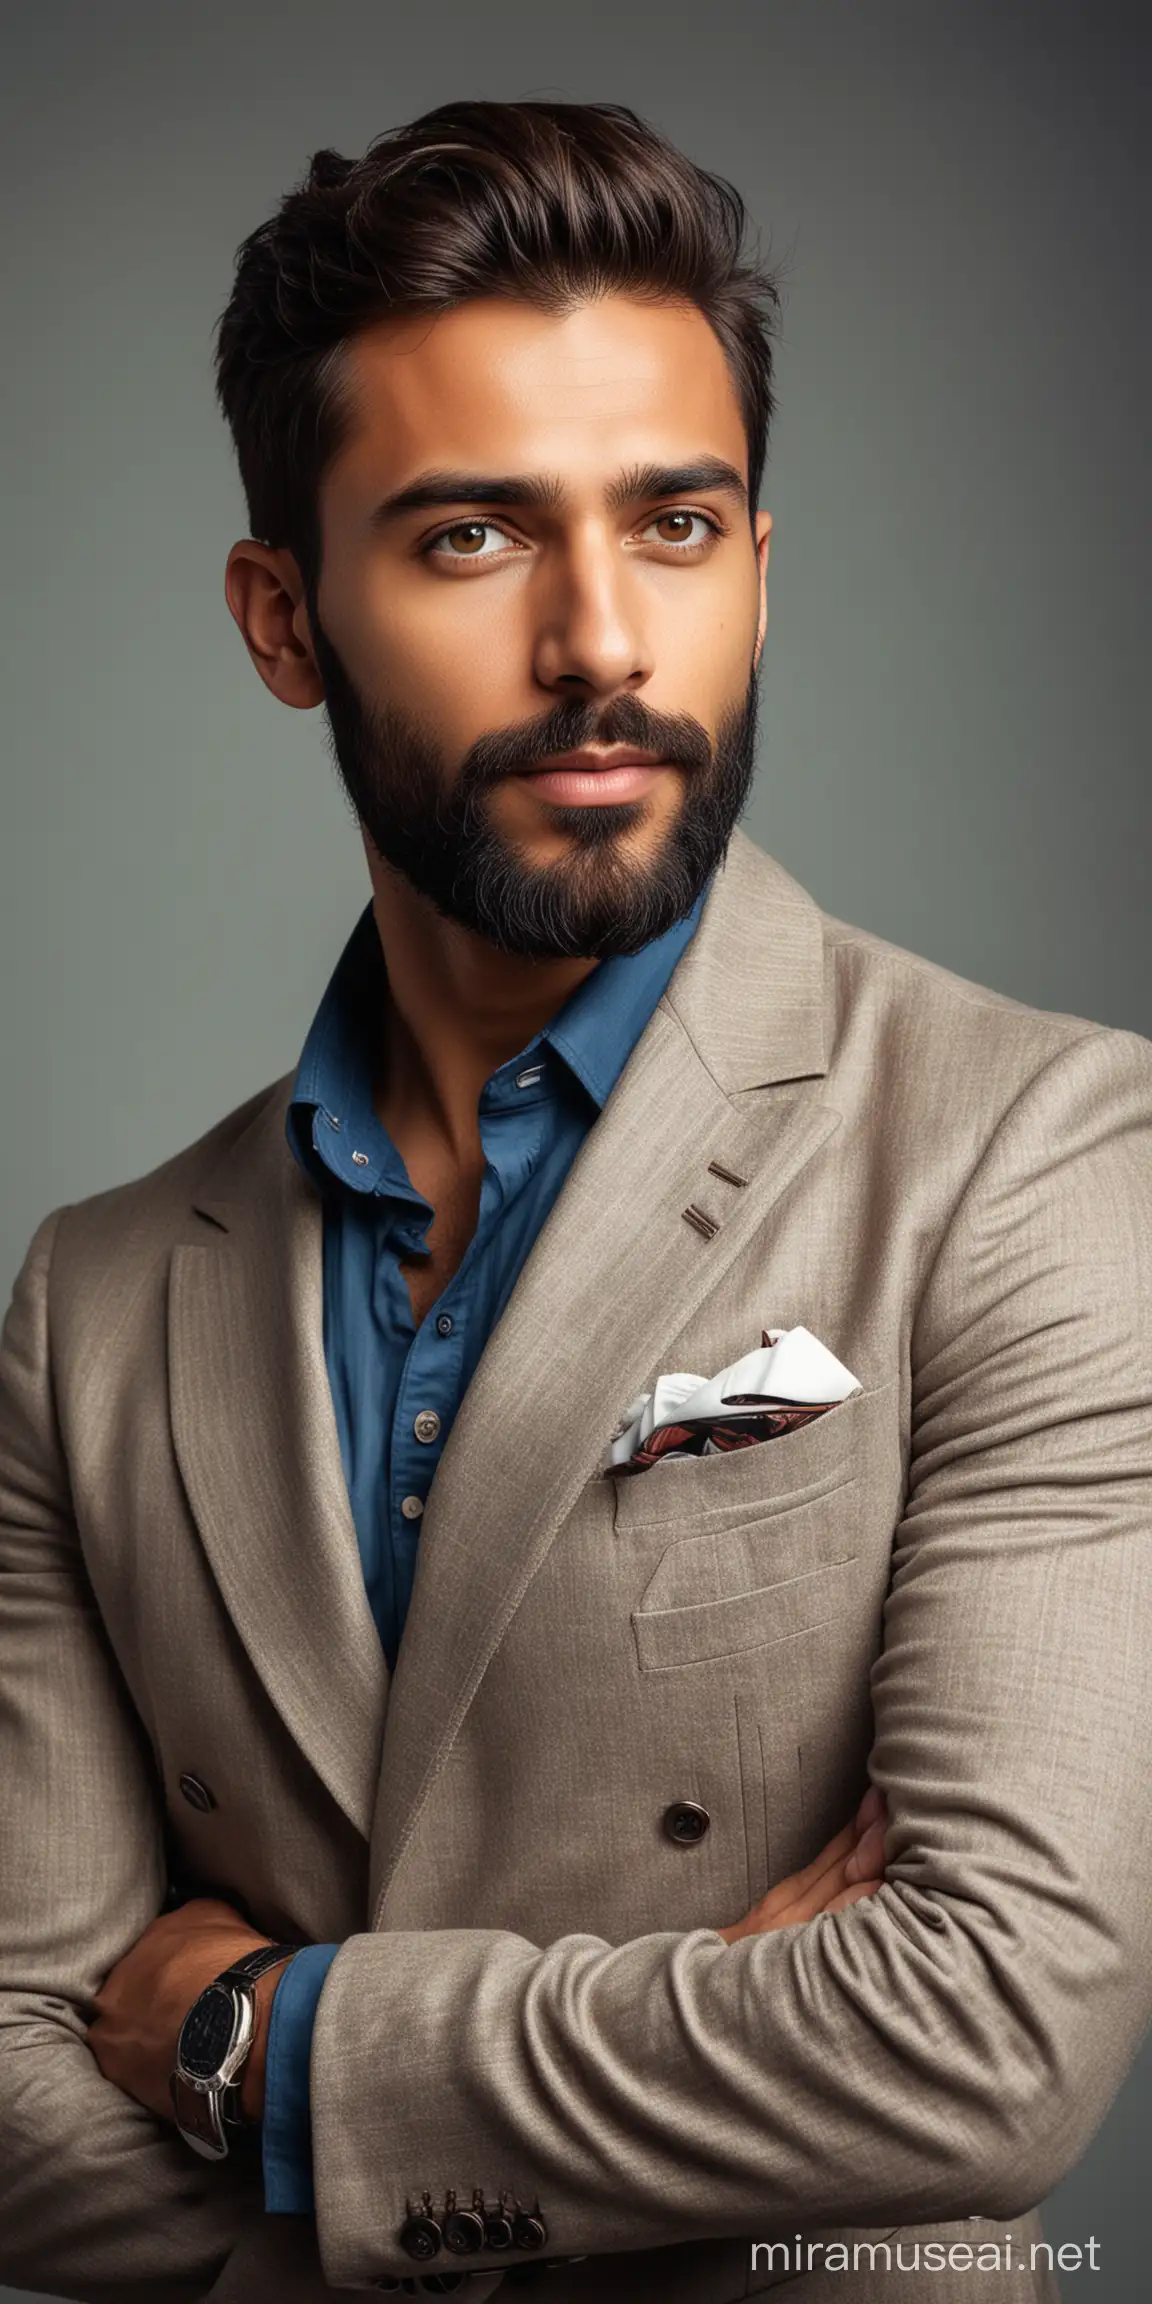 Elegant European Man with Indian Features Confident Alpha Male Portrait